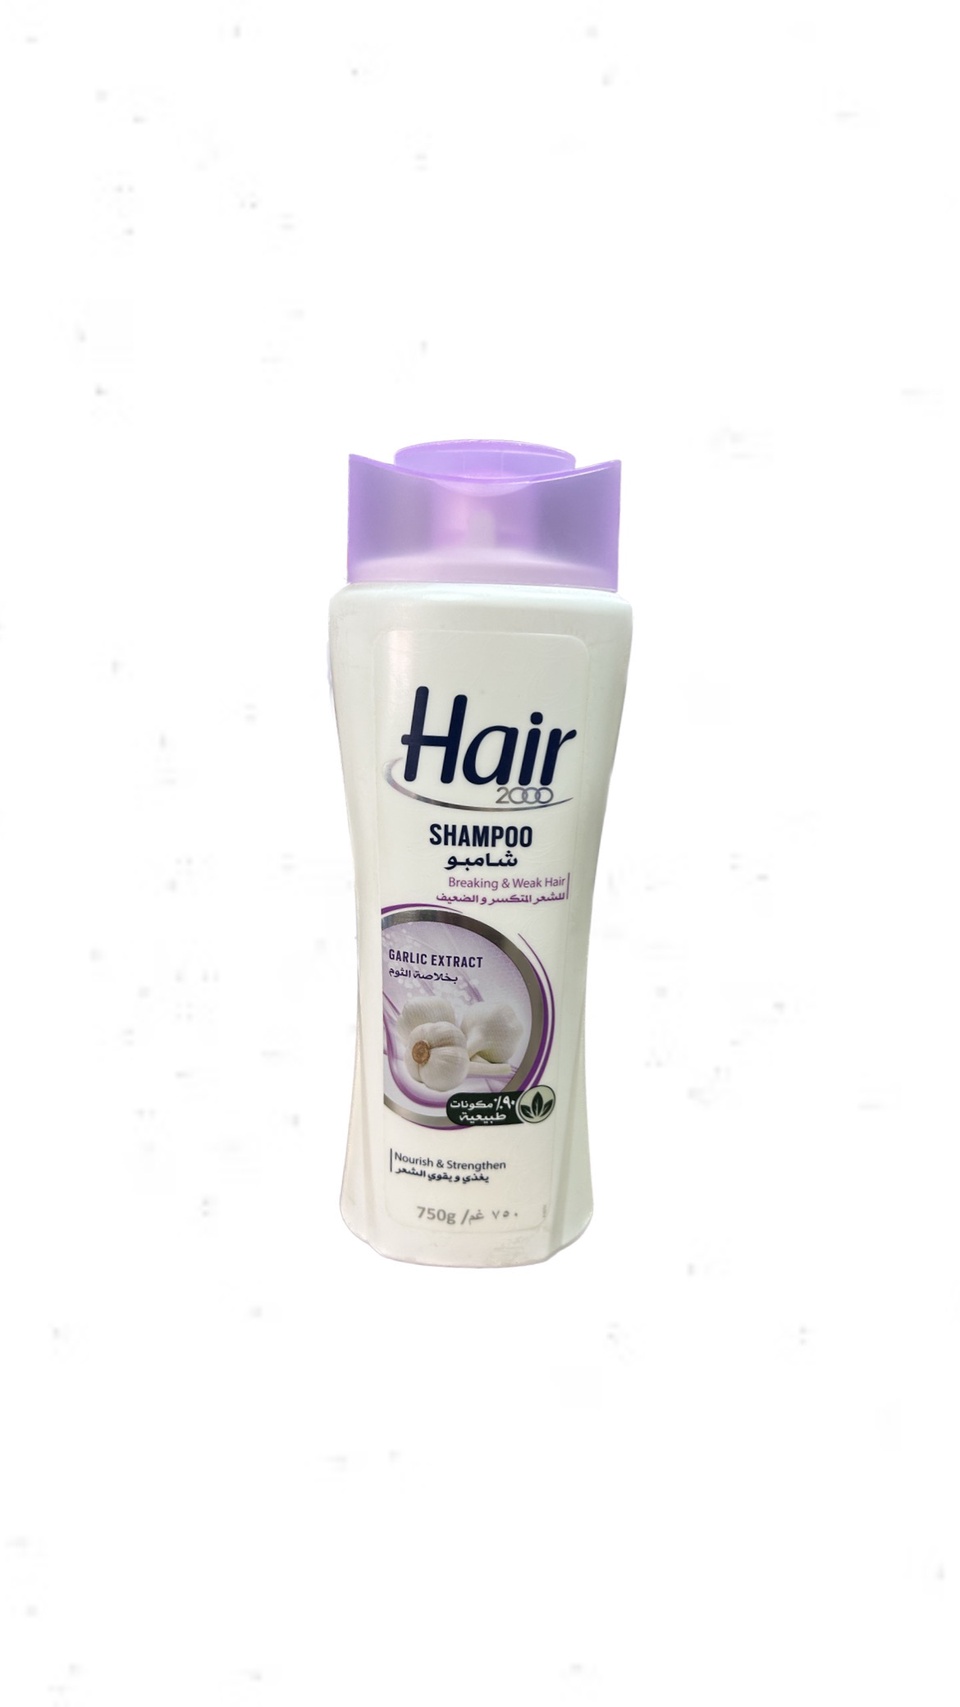 Шампунь Hair для тусклых и ослабленных волос с экстрактом чеснока 750 мл - 300 ₽, заказать онлайн.